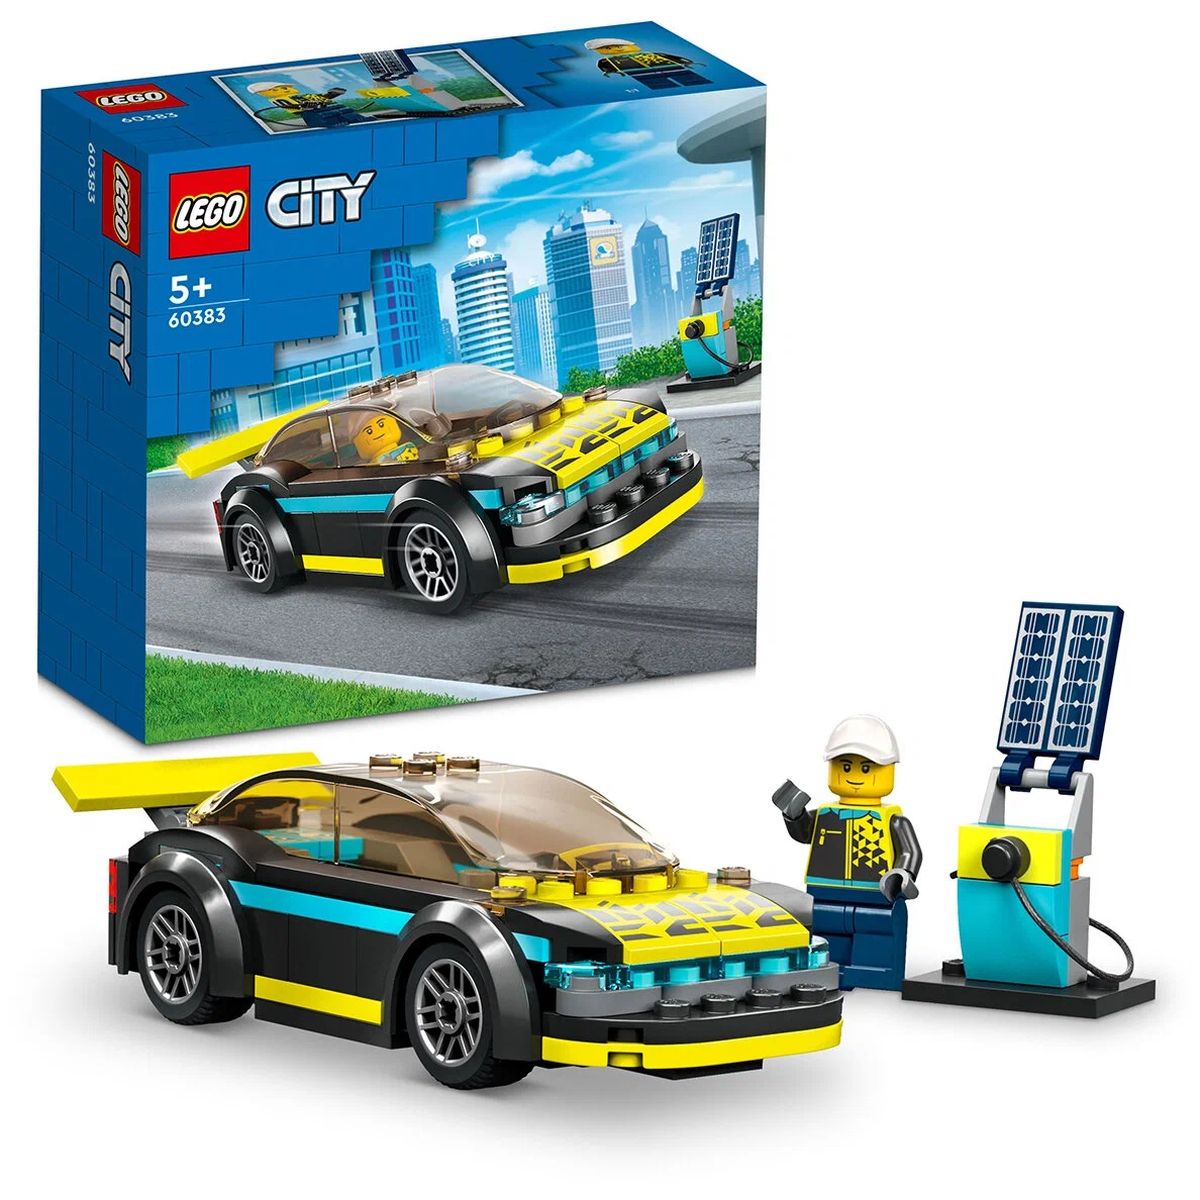 Конструктор LEGO City Электрический спорткар, 95 деталей, 60383